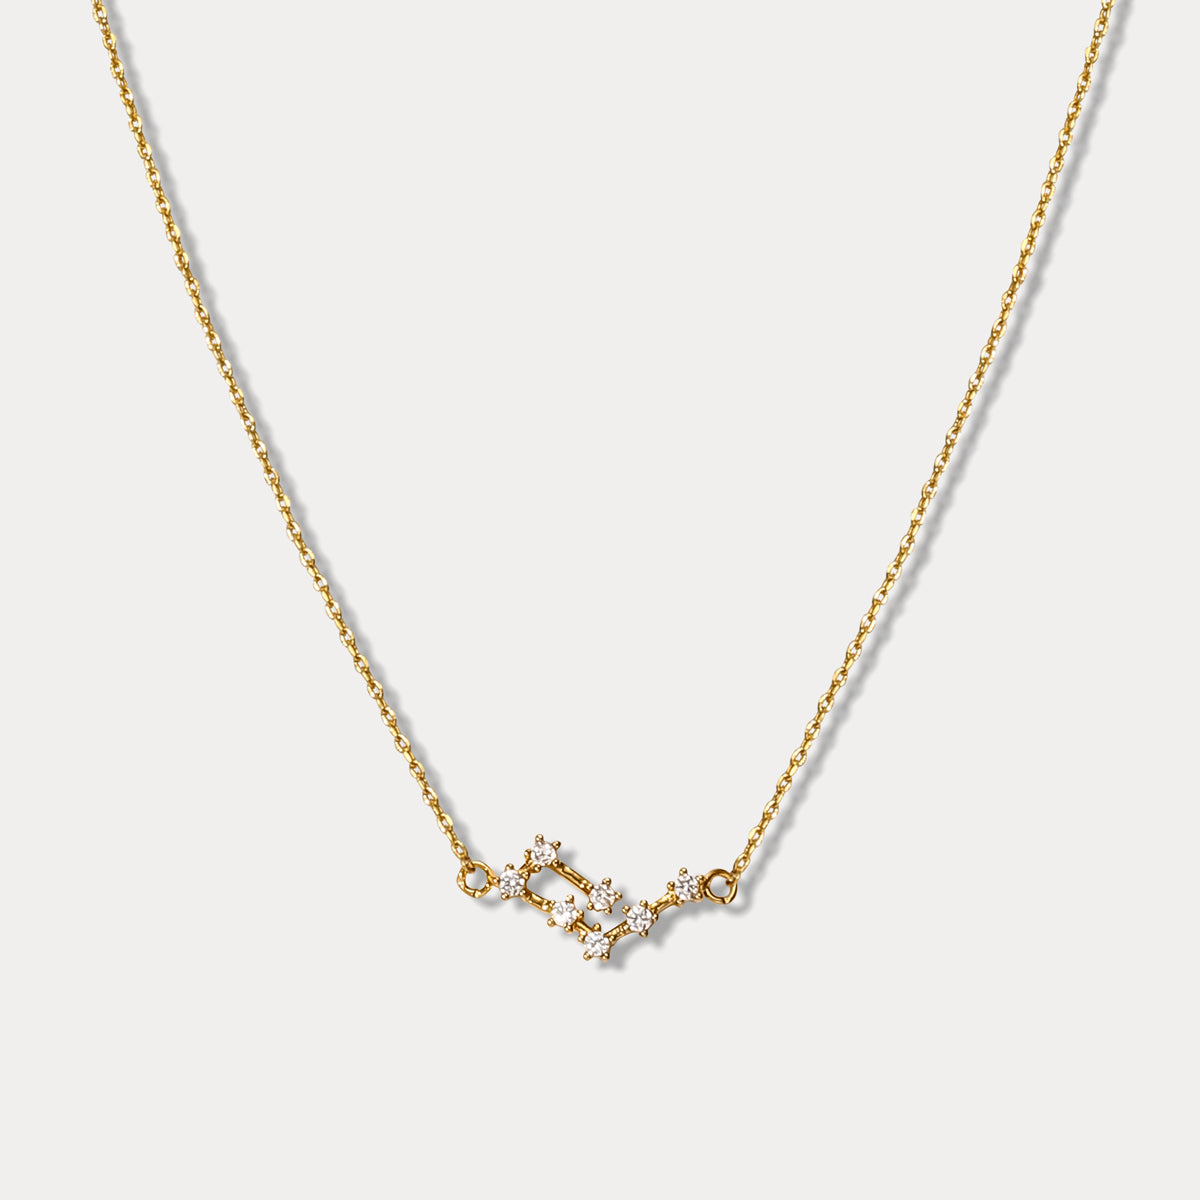 Selenichast Aquarius Constellation Diamond Pendant Necklace